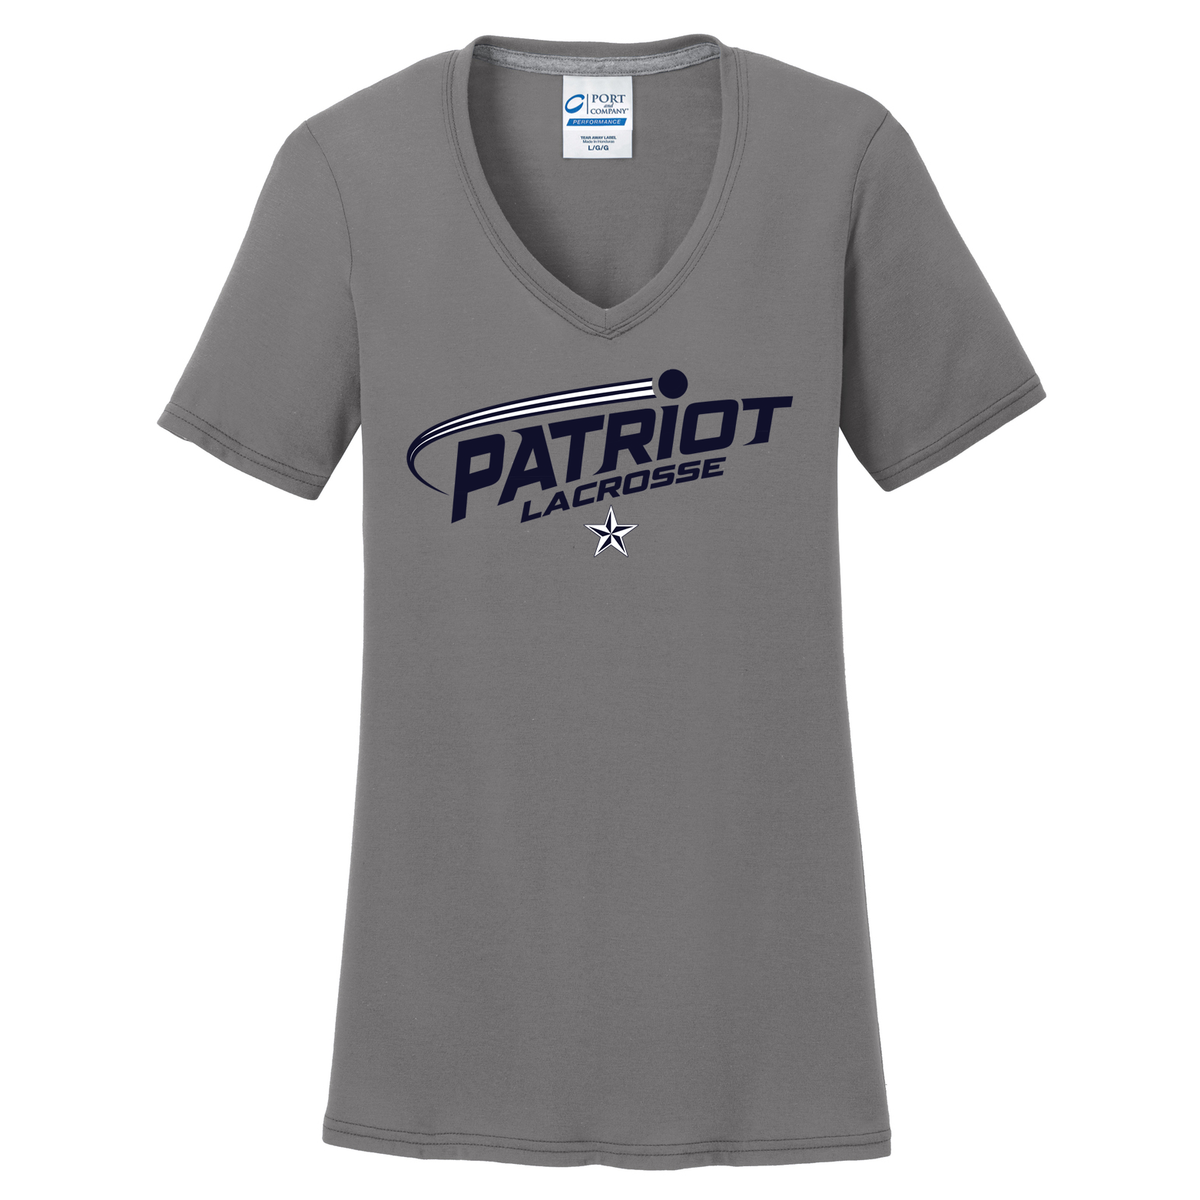 Patriot Lacrosse Women's T-Shirt